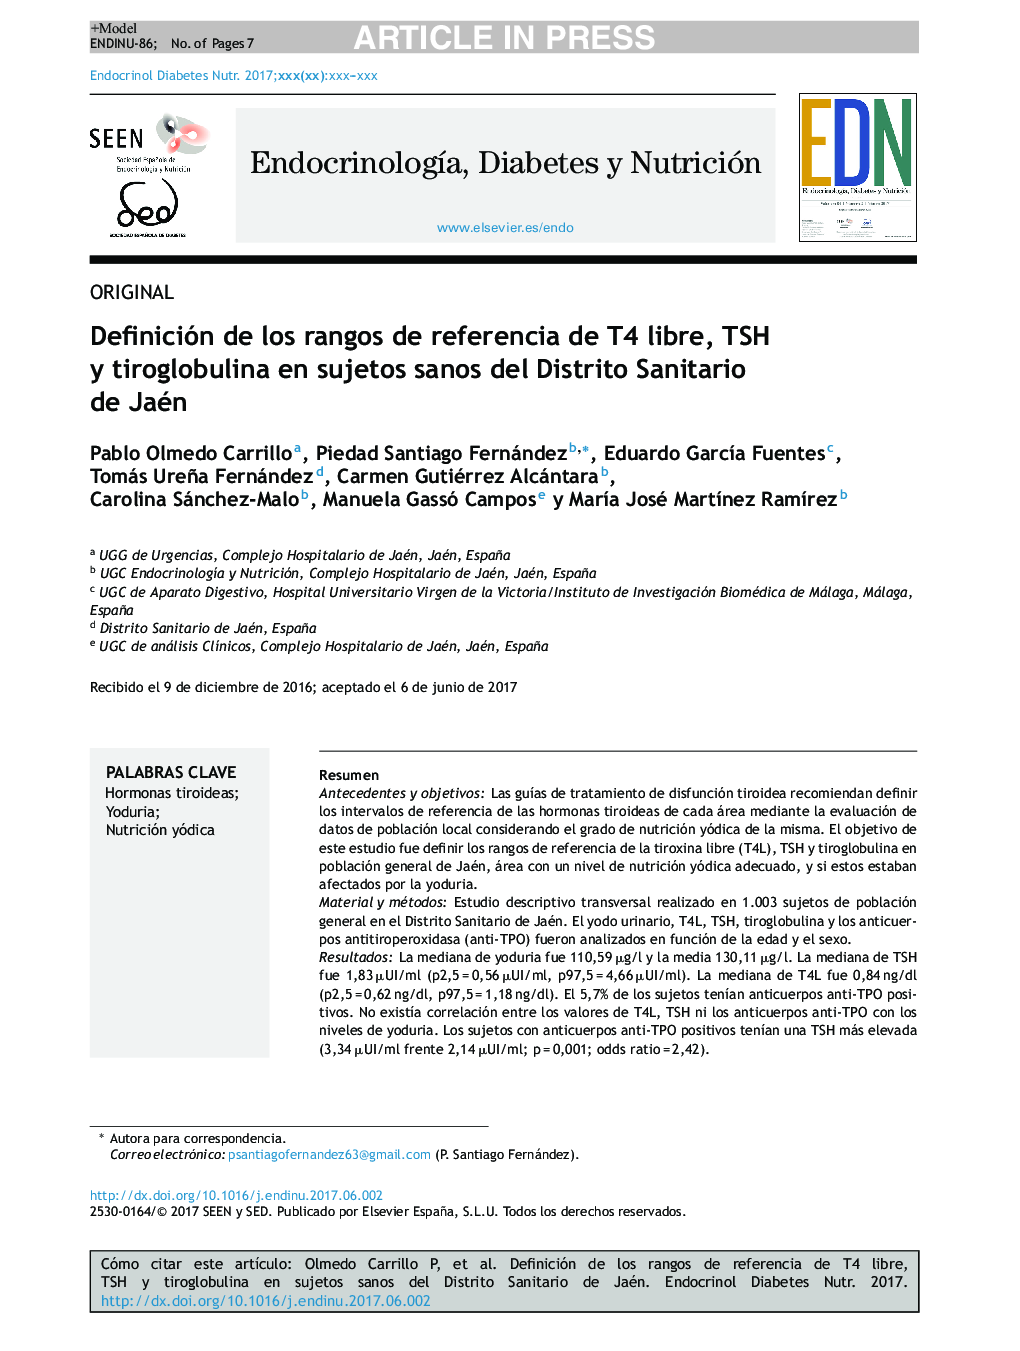 Definición de los rangos de referencia de T4 libre, TSH y tiroglobulina en sujetos sanos del Distrito Sanitario de Jaén